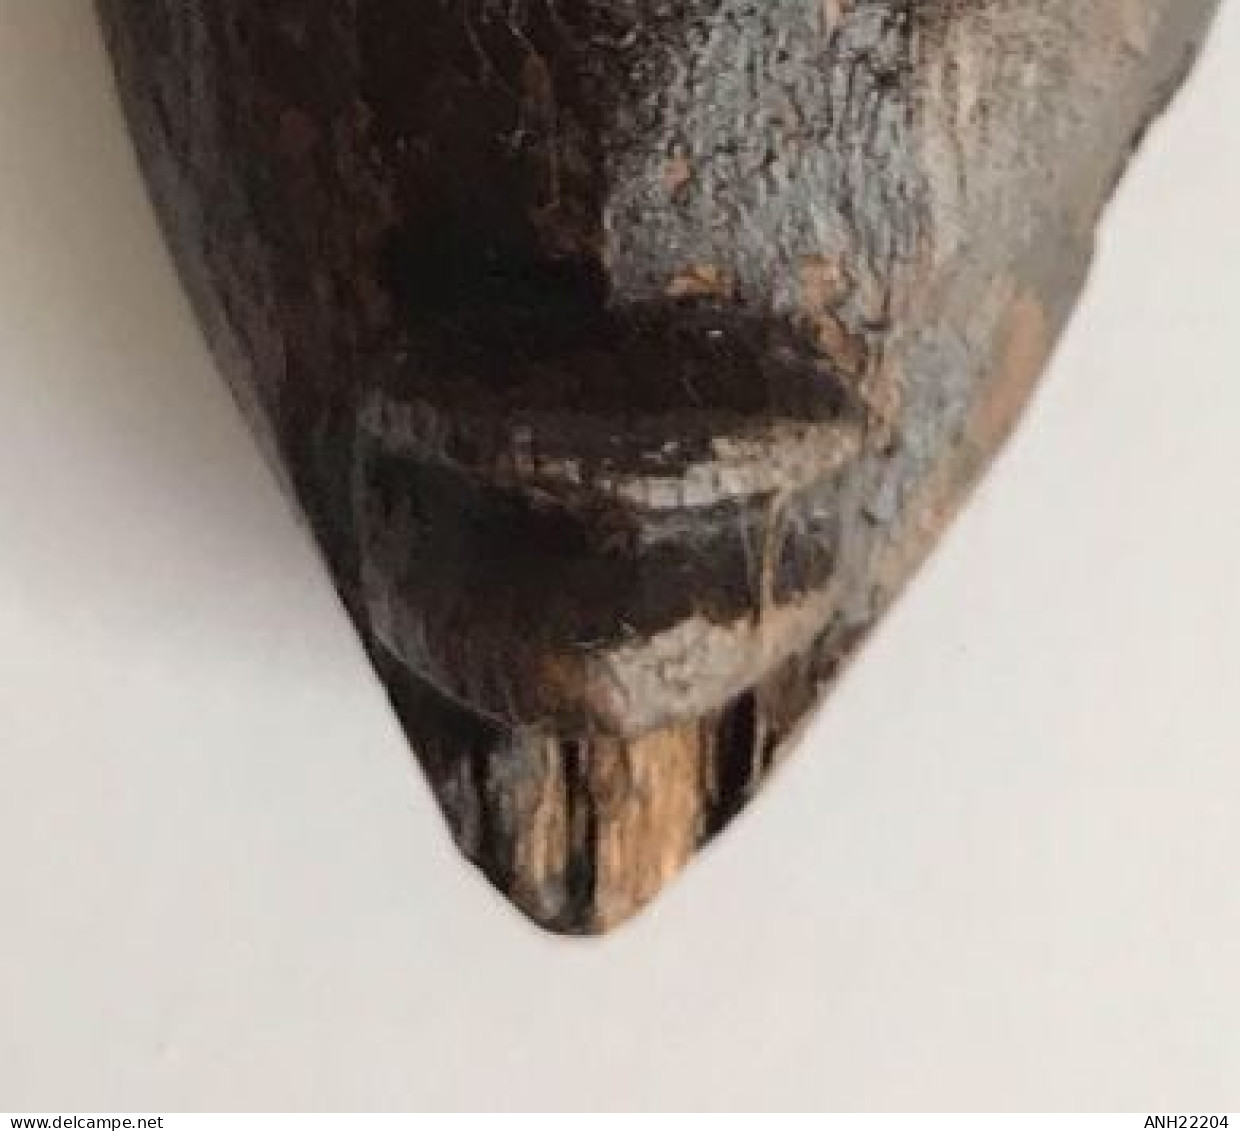 Ancien petit lance-pierres (H: 20,5 cm), Ethnie Baoulé, Côte d’Ivoire, 2ème moitié 20ème siècle